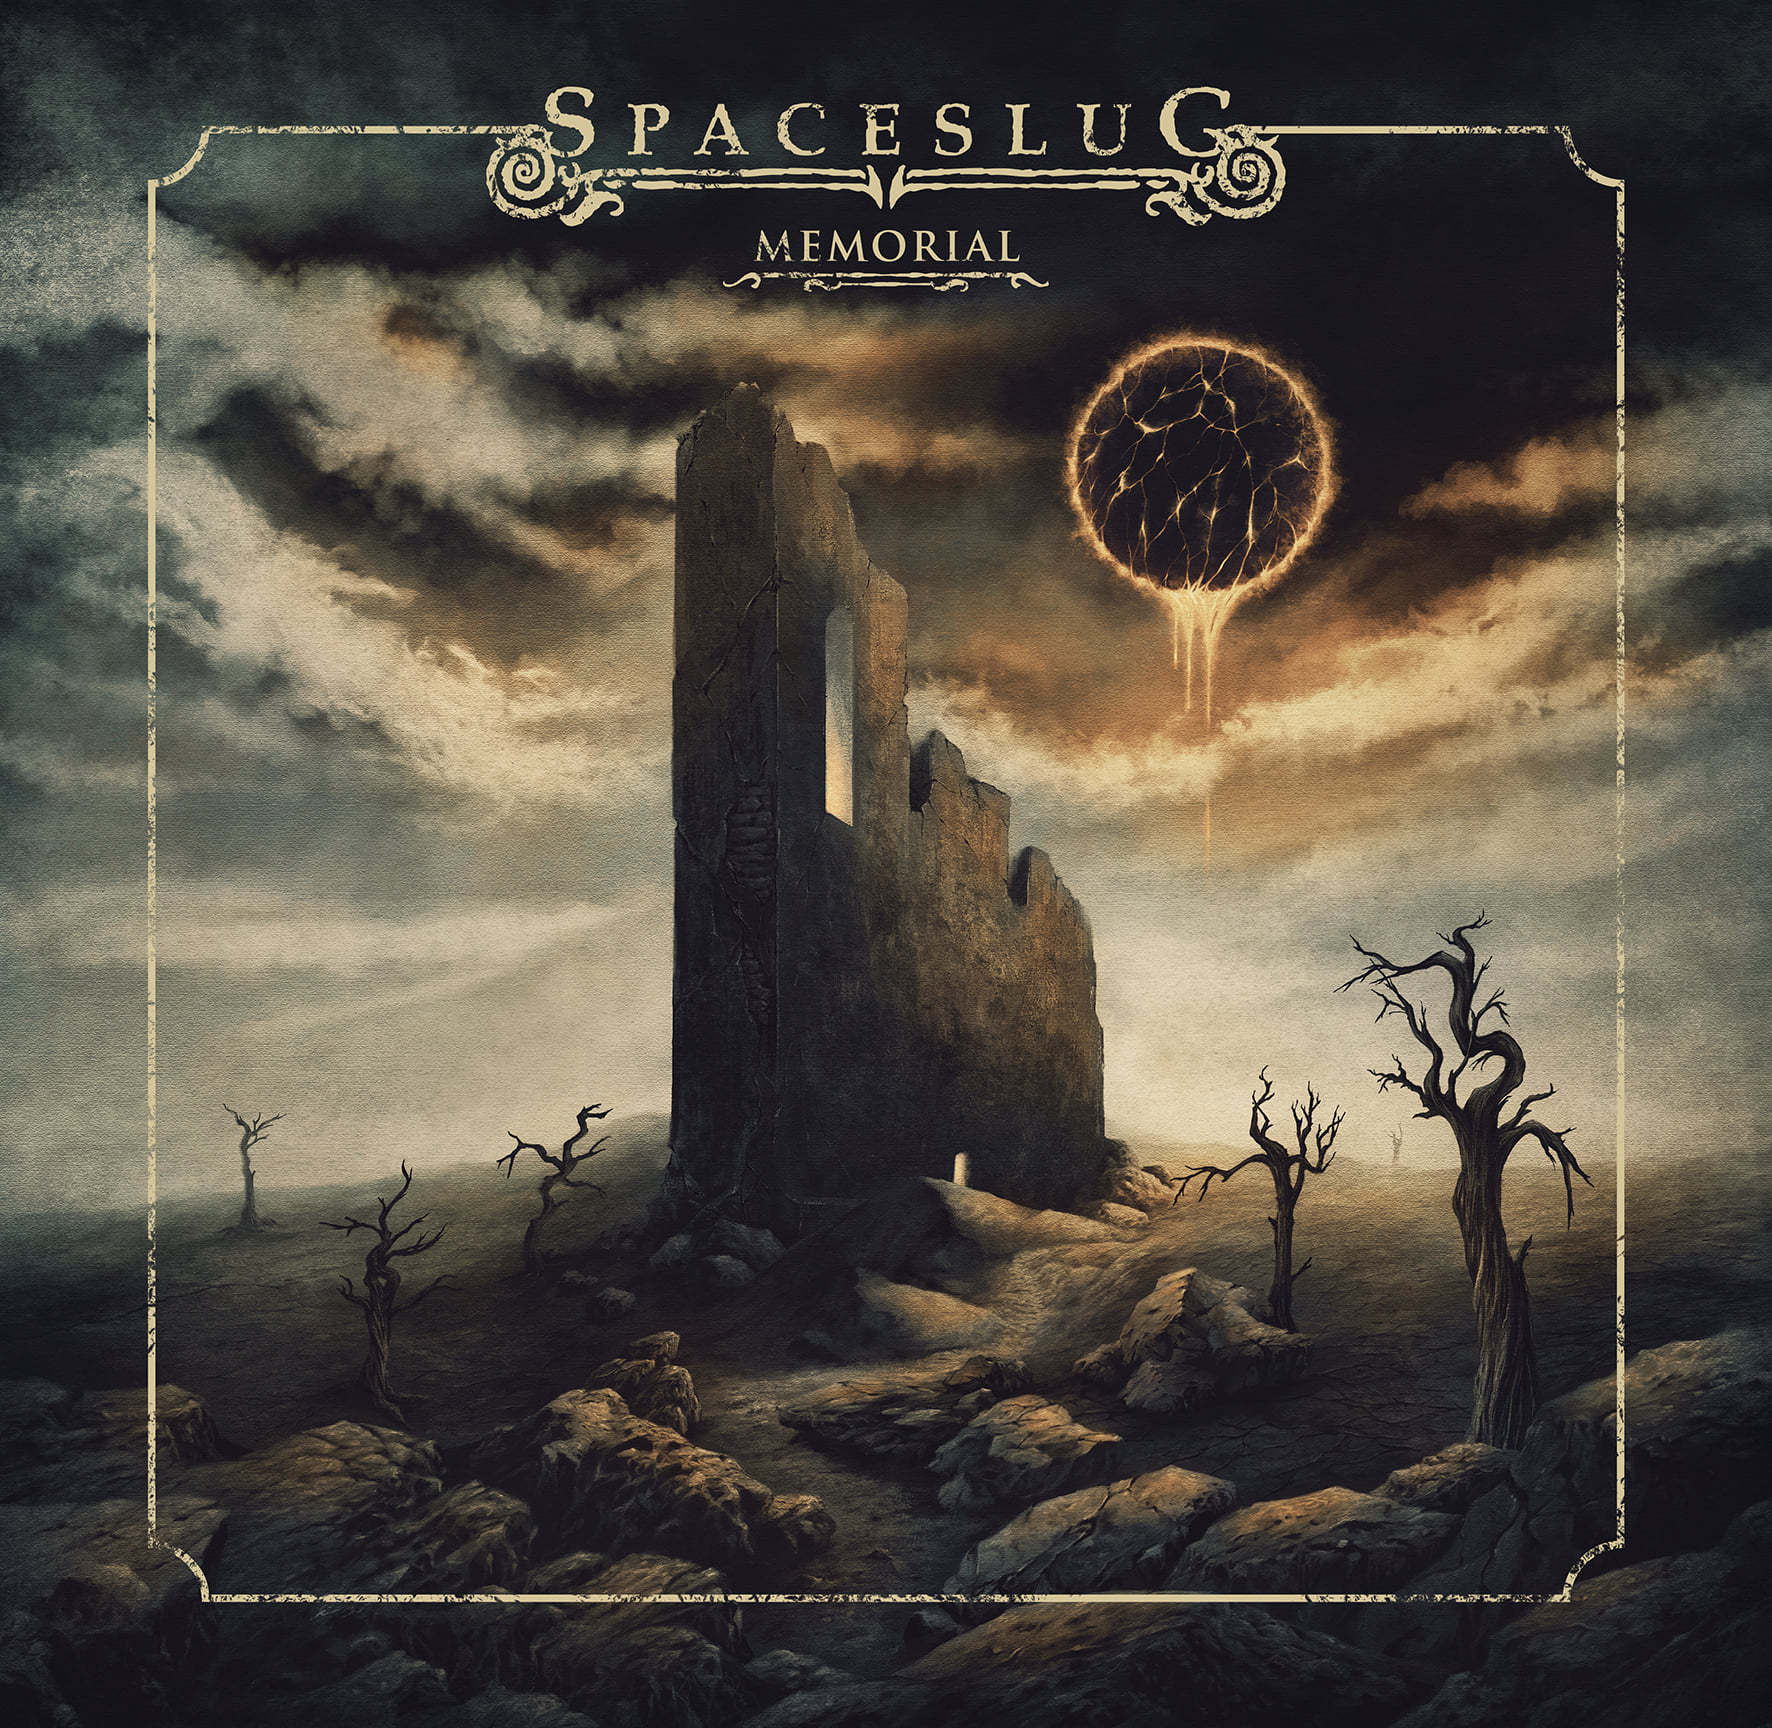 Spaceslug Announce New Album Memorial out Dec. 10